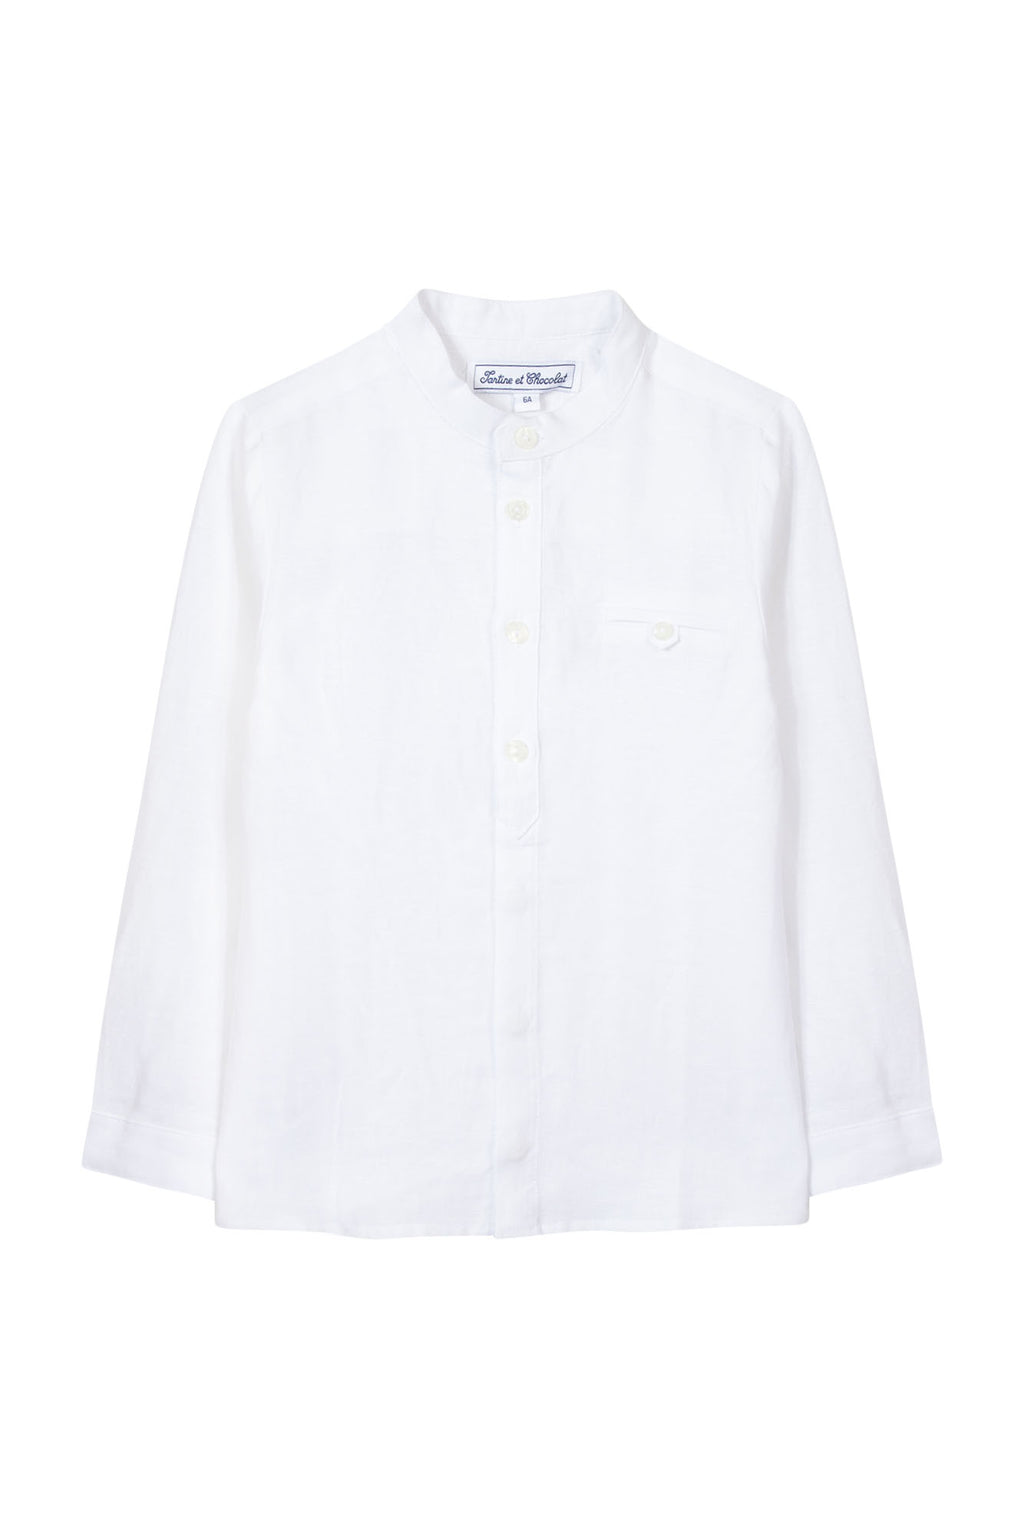 Shirt - Linen White long sleeves